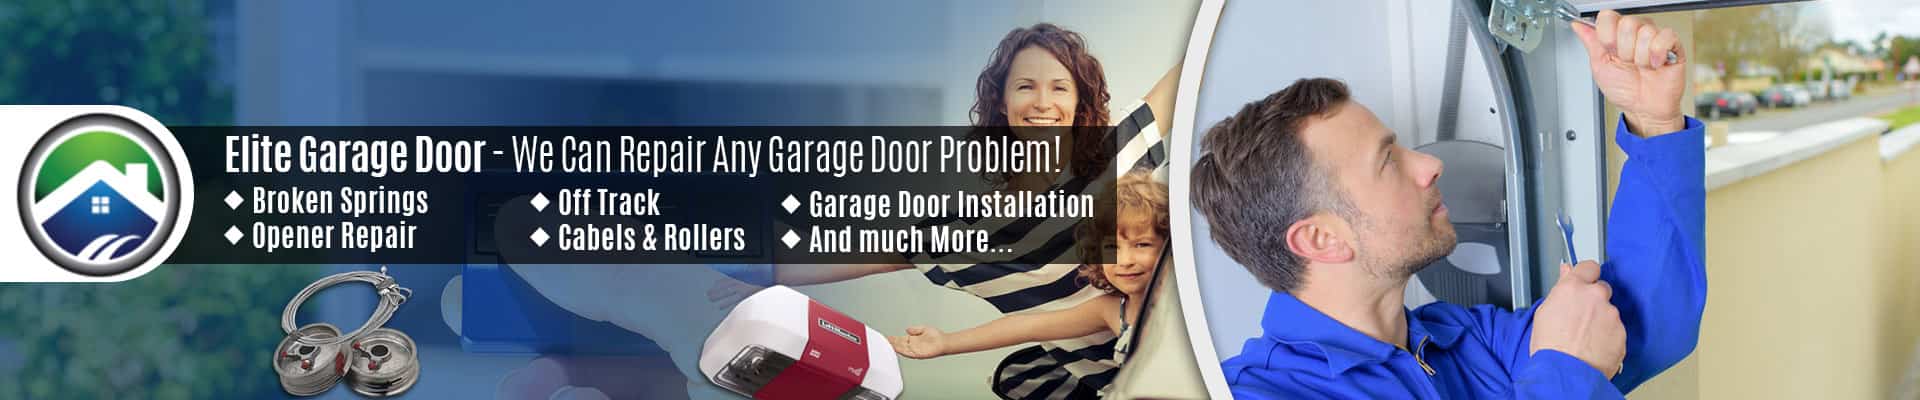 Garage Door Repair Service Marysville – Elite Garage Door of Marysville 